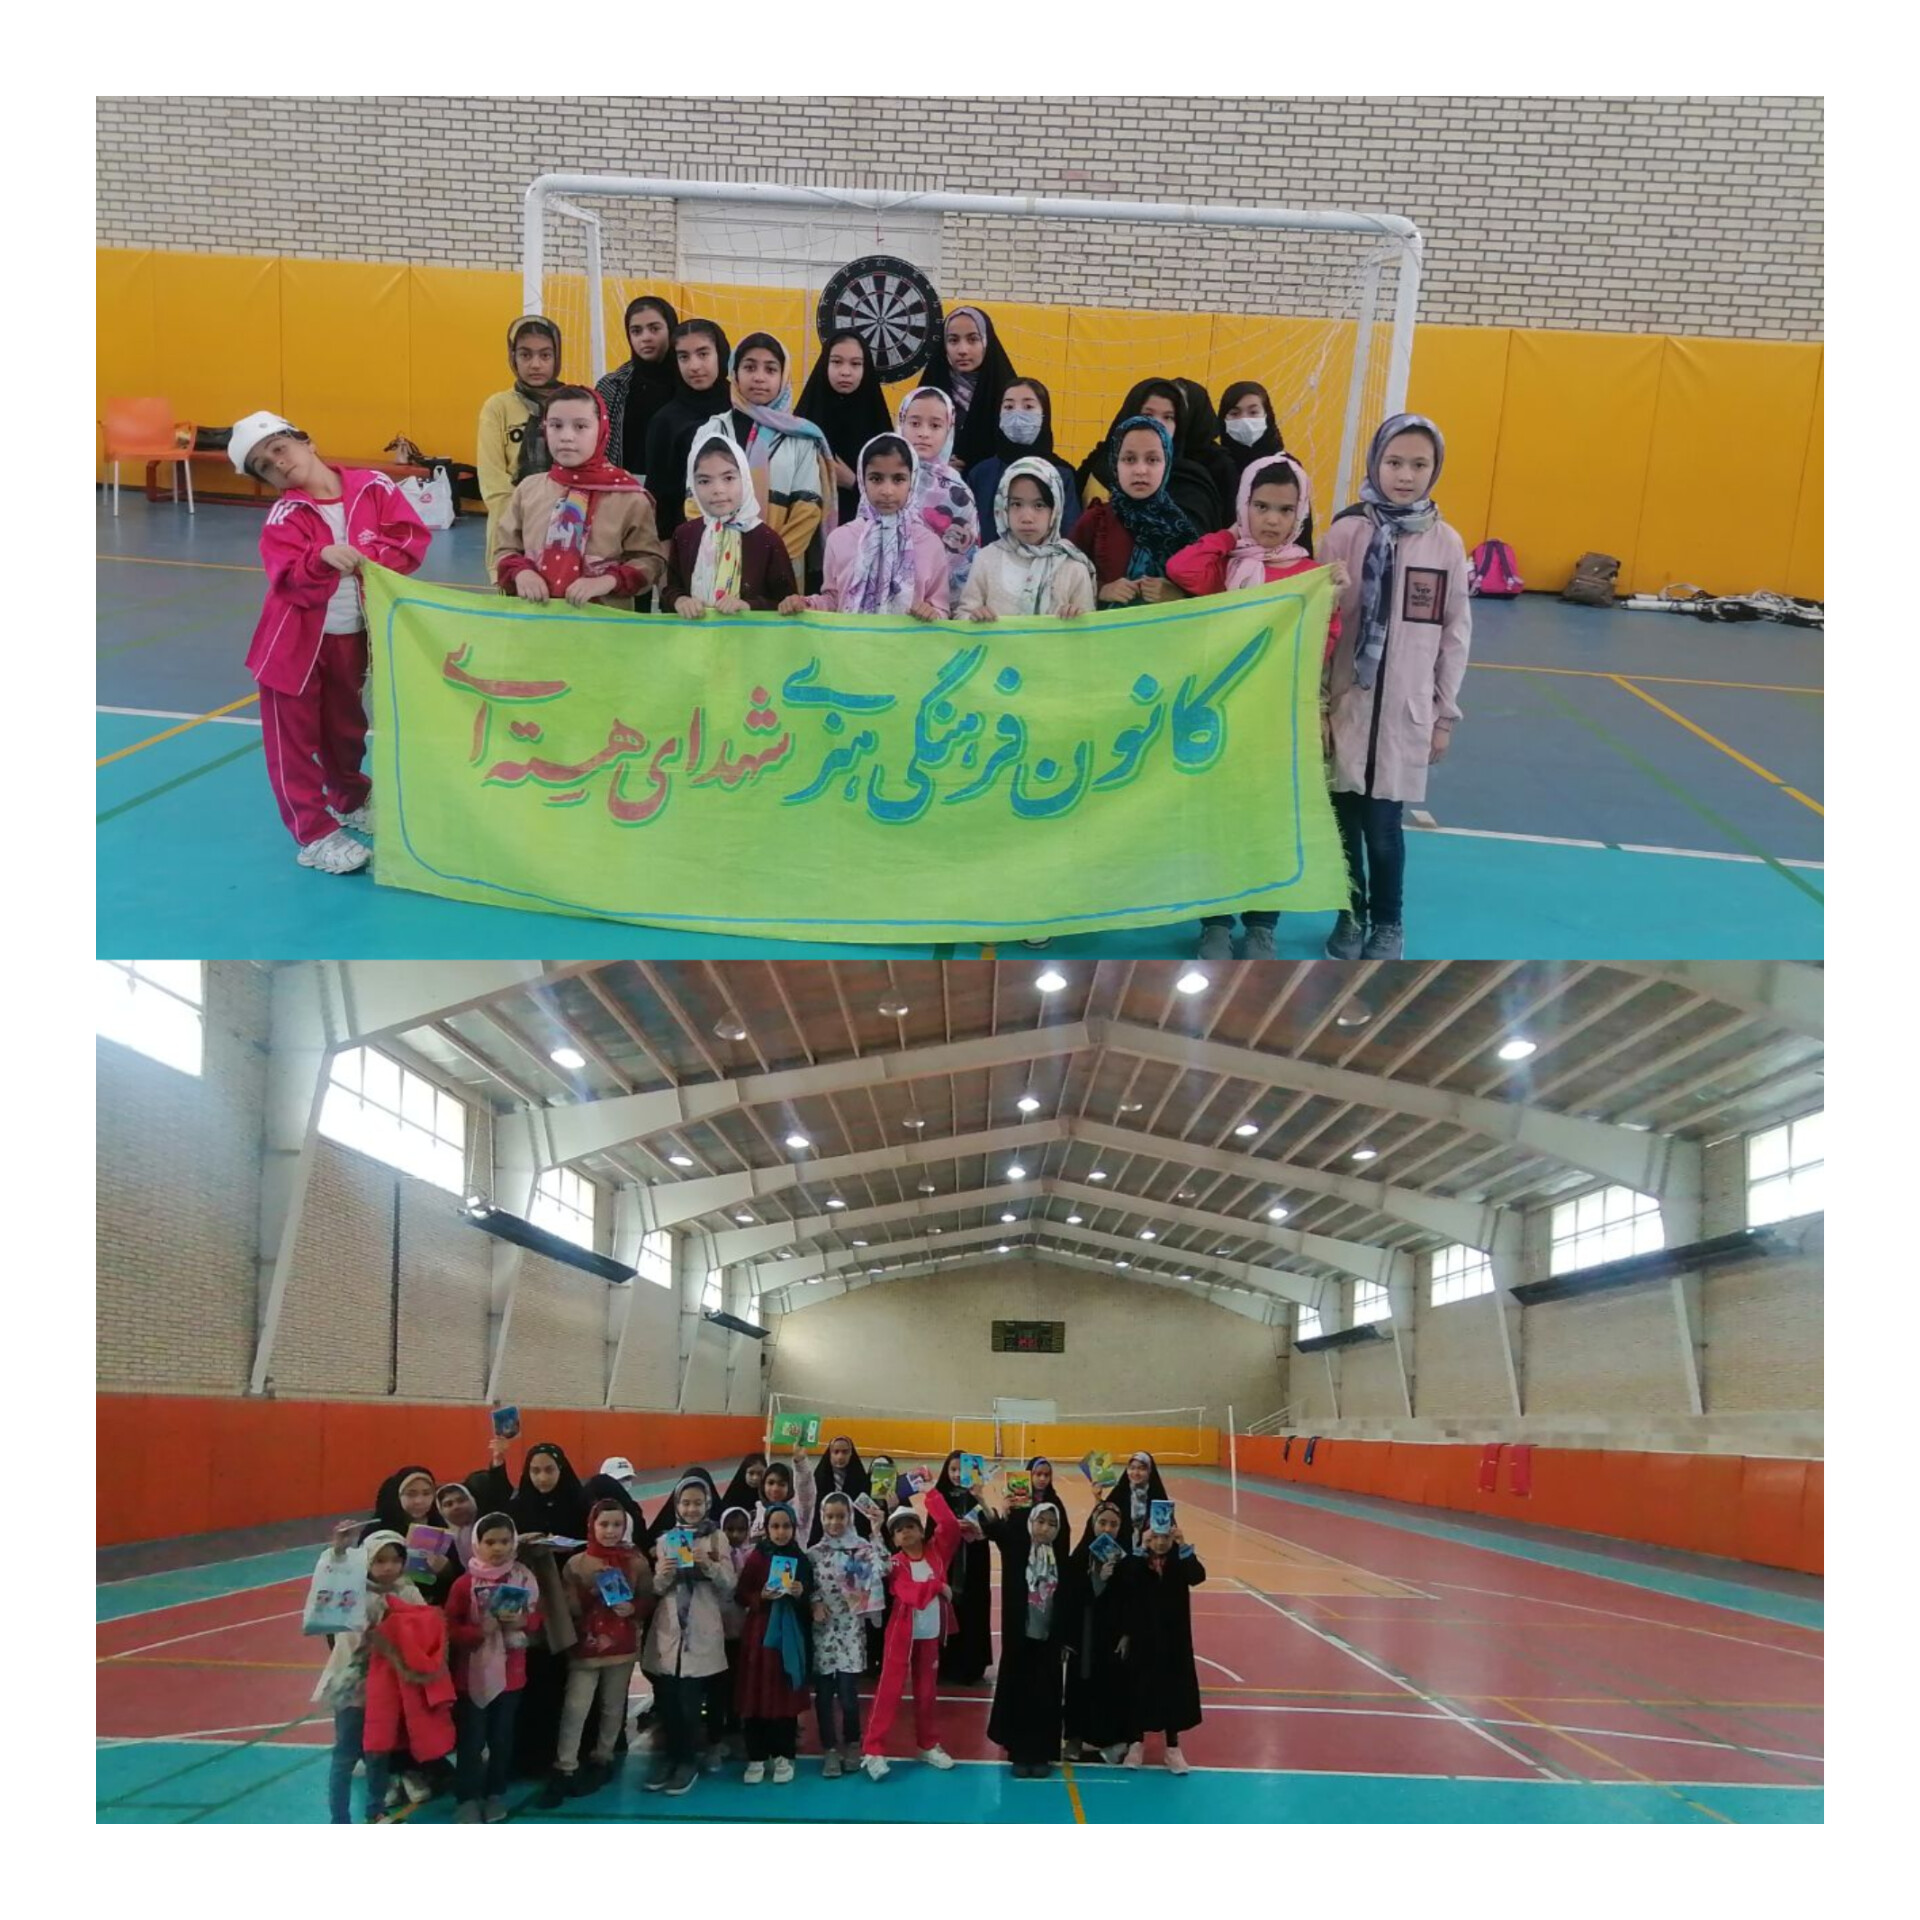 به مناسبت روز دانش آموز مسابقات ورزشی بین دو مسجد برگزار شد.